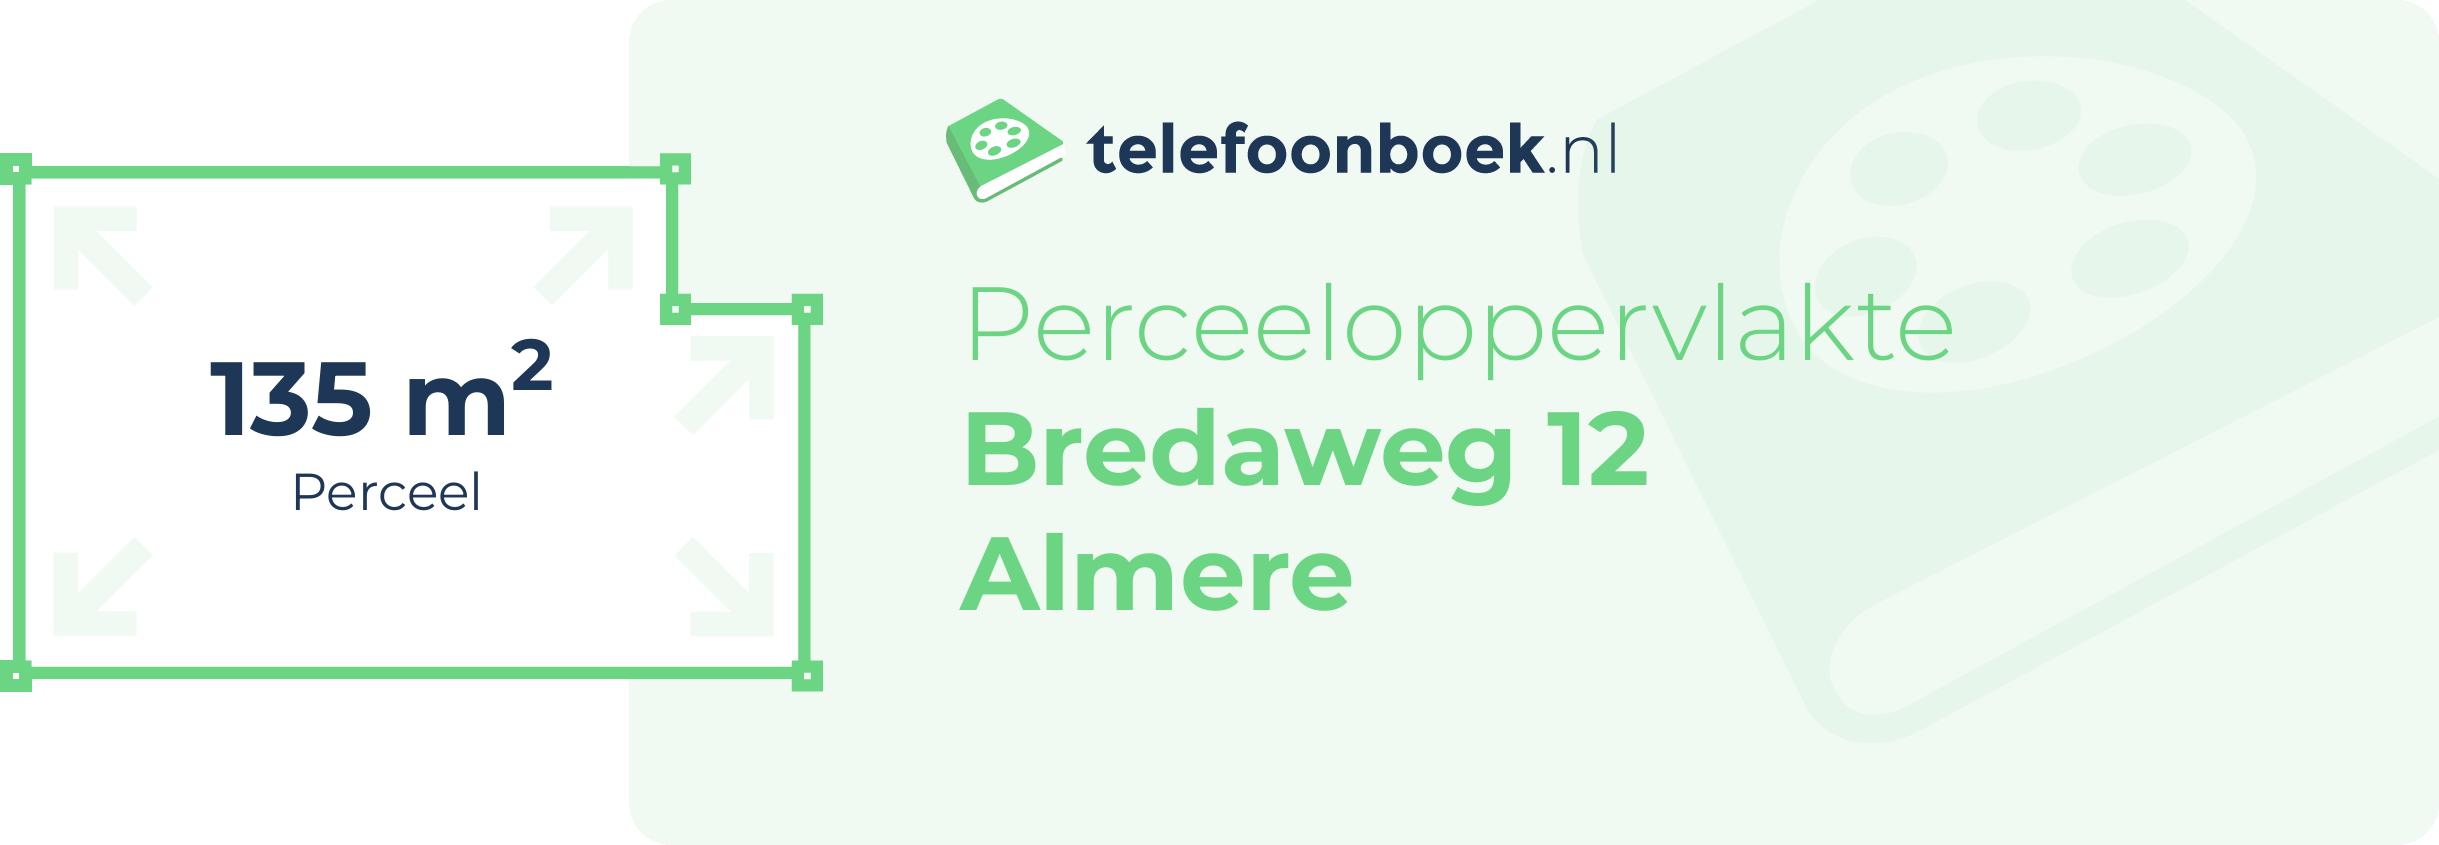 Perceeloppervlakte Bredaweg 12 Almere